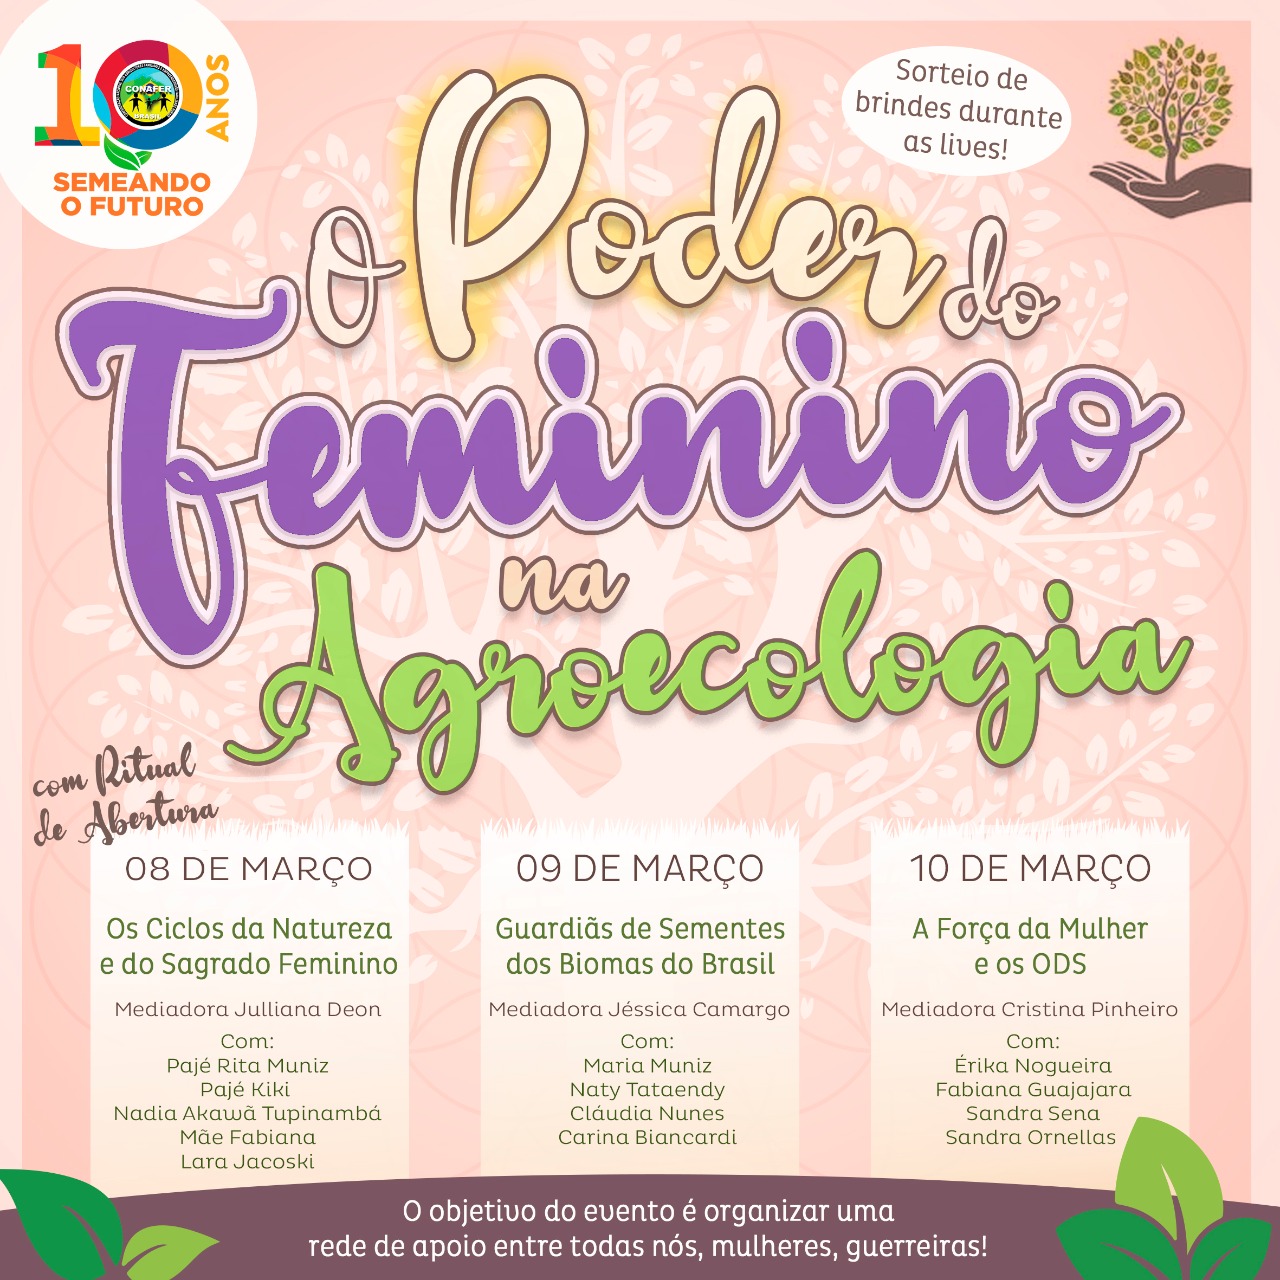 CONAFER realizará o webinário “O poder do feminino na agroecologia” para celebrar o mês da mulher